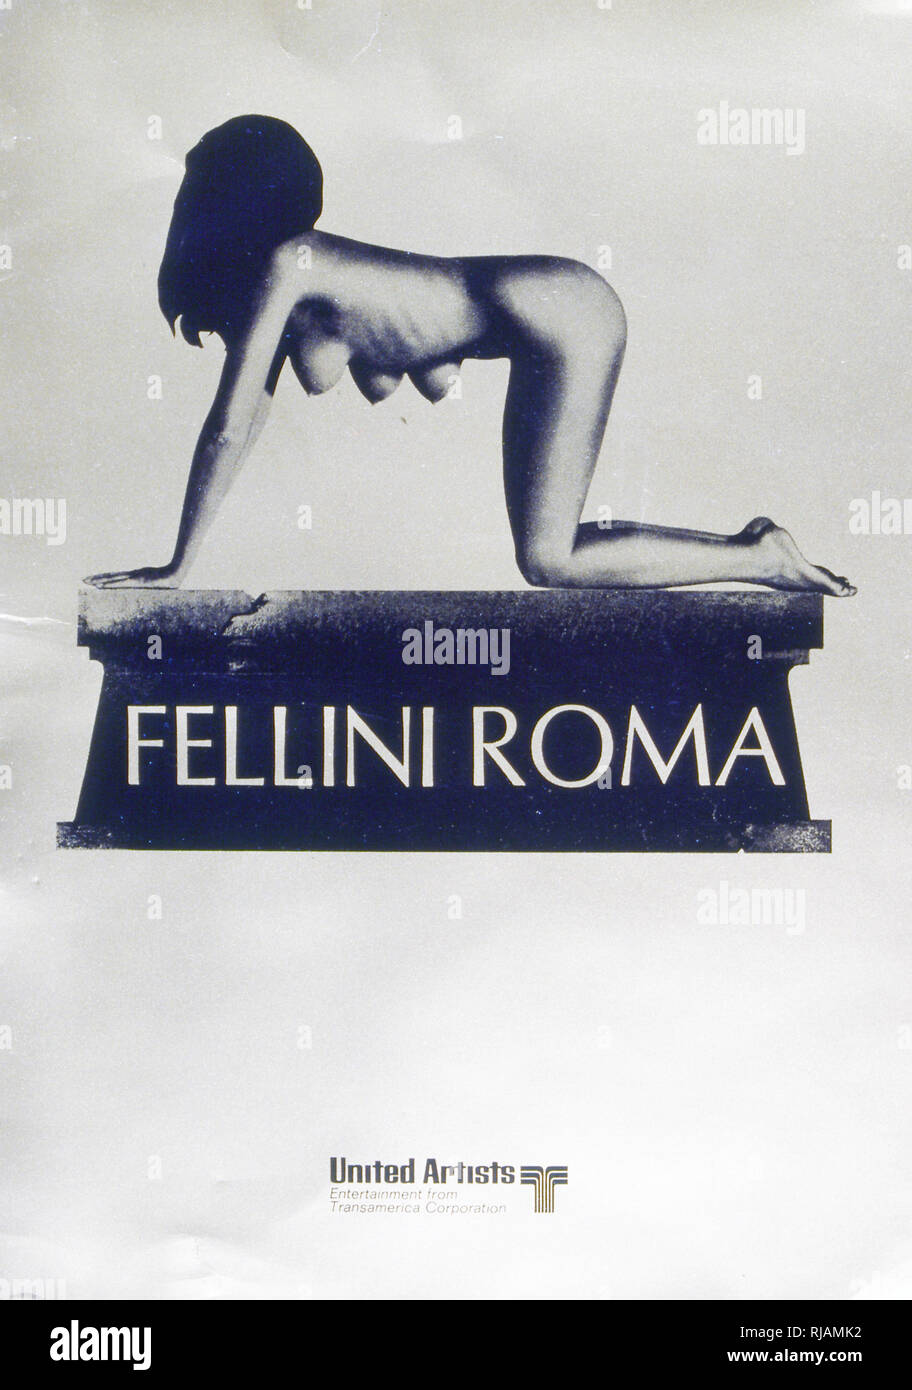 1972 Film Posta 'gitanos' de Fellini. Un semi-autobiográfico, comedia-drama poética película representa director Federico Fellini's move desde su natal Rimini a Roma como la juventud. Es un homenaje a la ciudad, se muestra en una serie de episodios débilmente conectados establecida durante la Roma del pasado y del presente. Federico Fellini (1920 - 1993) fue un director de cine y guionista italiano. Foto de stock